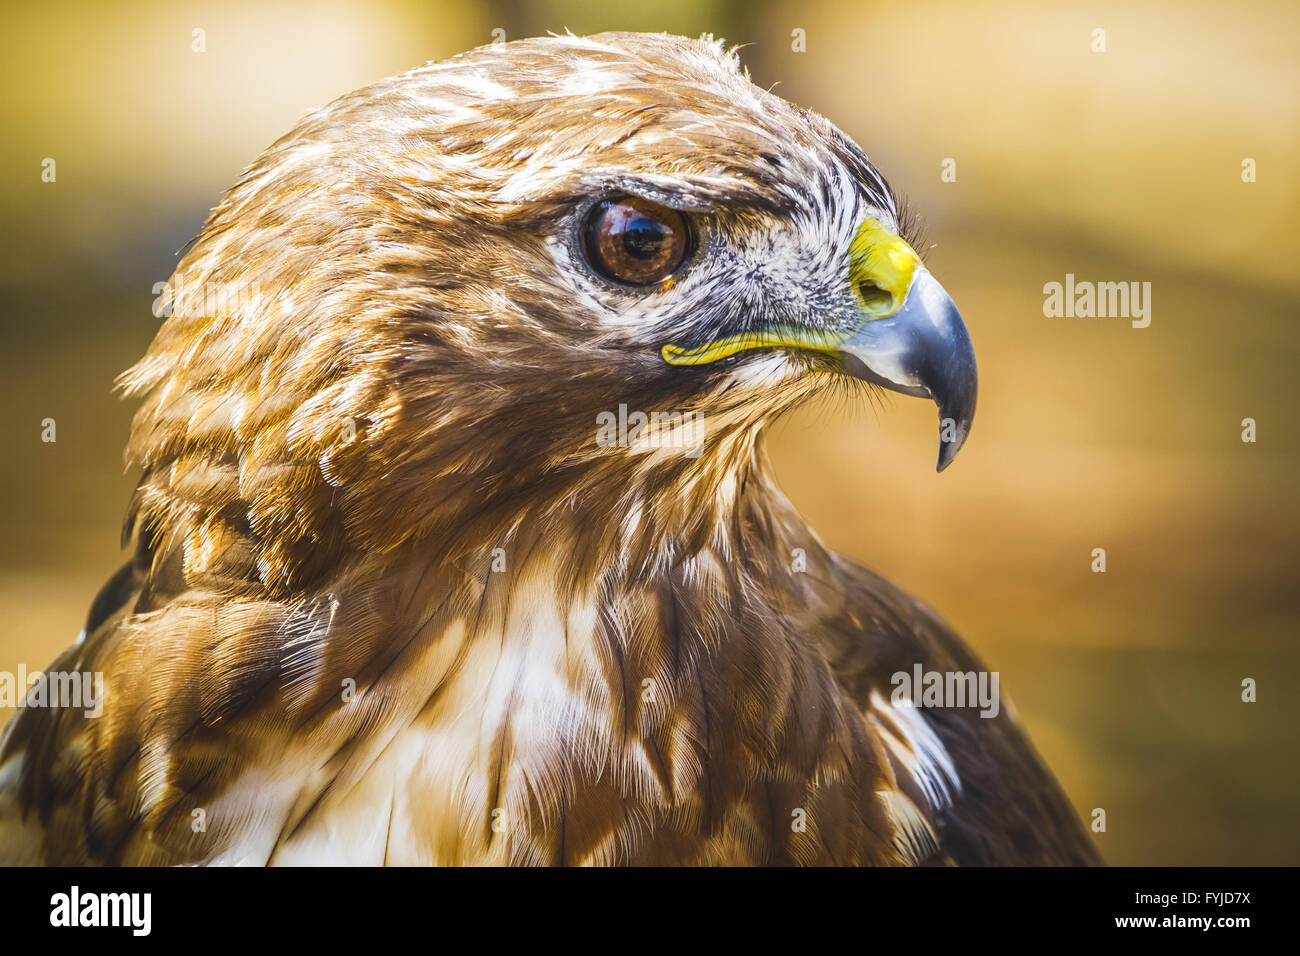 Fauna, Adler, tagaktive Raubvogel mit schönen Gefieder und gelben Schnabel Stockfoto